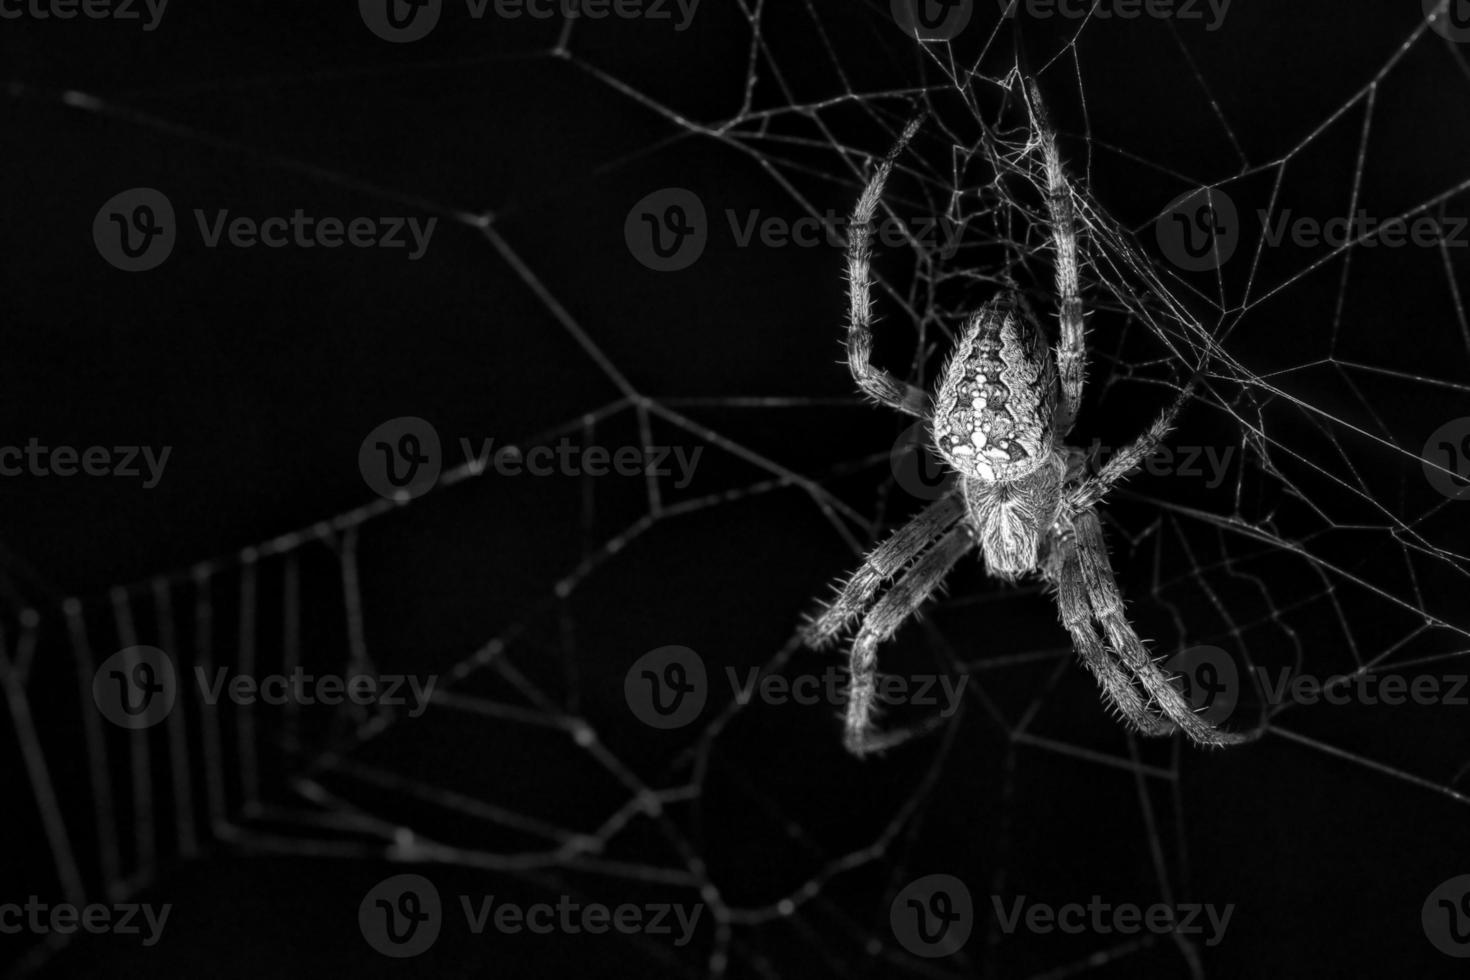 kruis spin in web. de jager loert op zijn prooi foto